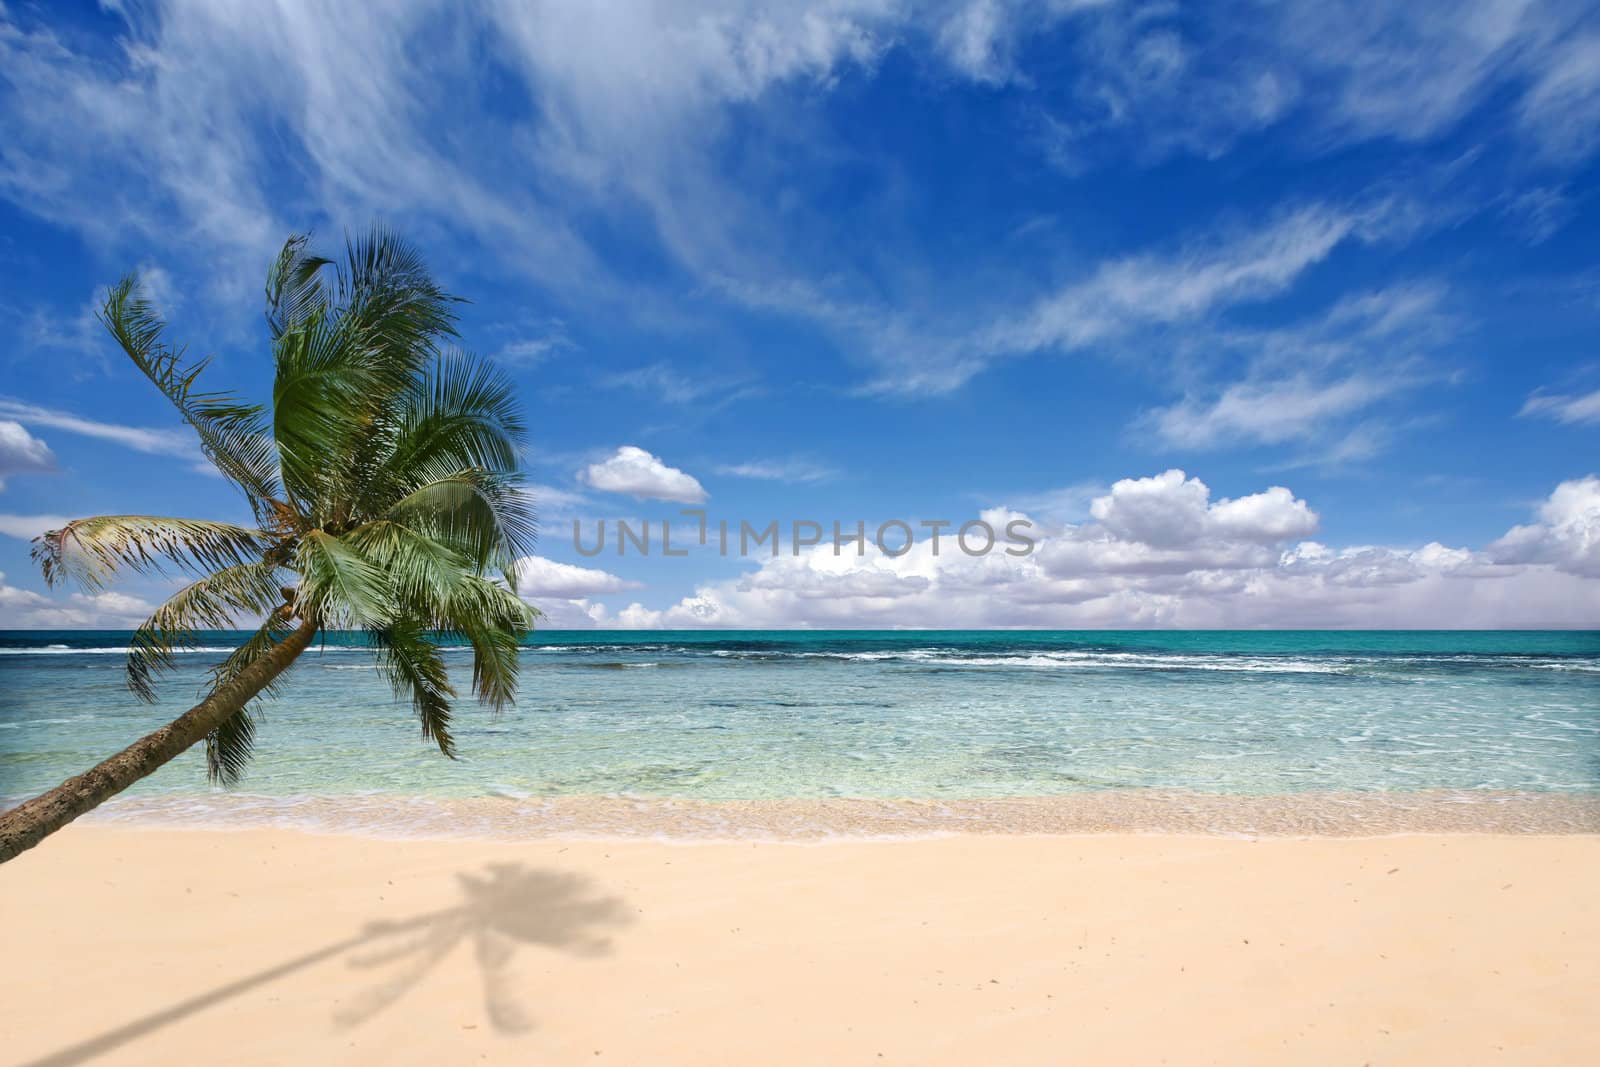 Palm Tree Over the Ocean Waves on a Beach in Kauai Hawaii